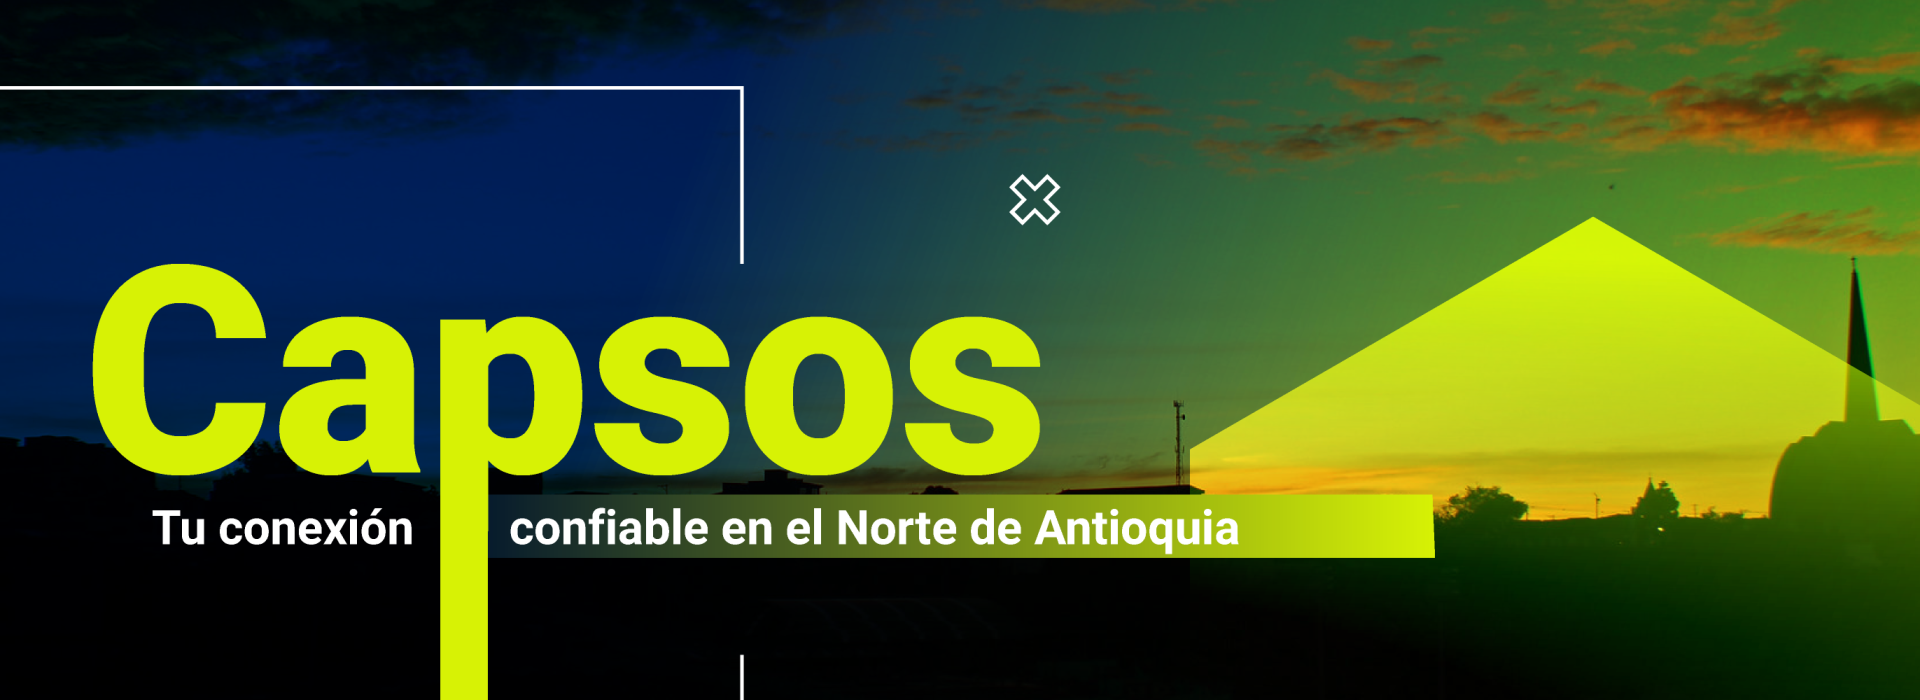 Capsos: Tu conexión confiable en el Norte de Antioquia